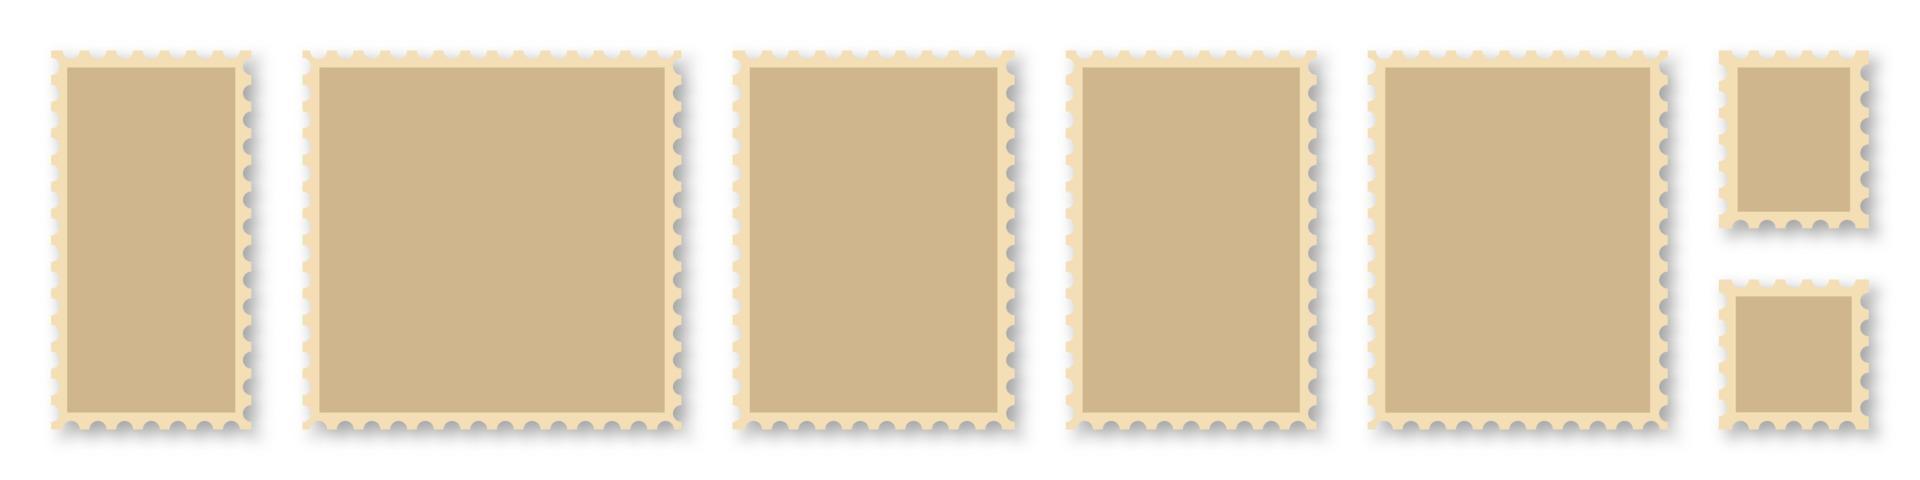 leere briefmarkenrahmen gesetzt. Mockup-Briefmarken mit Schatten. Sammlung von Vorlagen für Briefmarkengrenzen. realistisches Briefmarkenset. Vektor-Illustration vektor